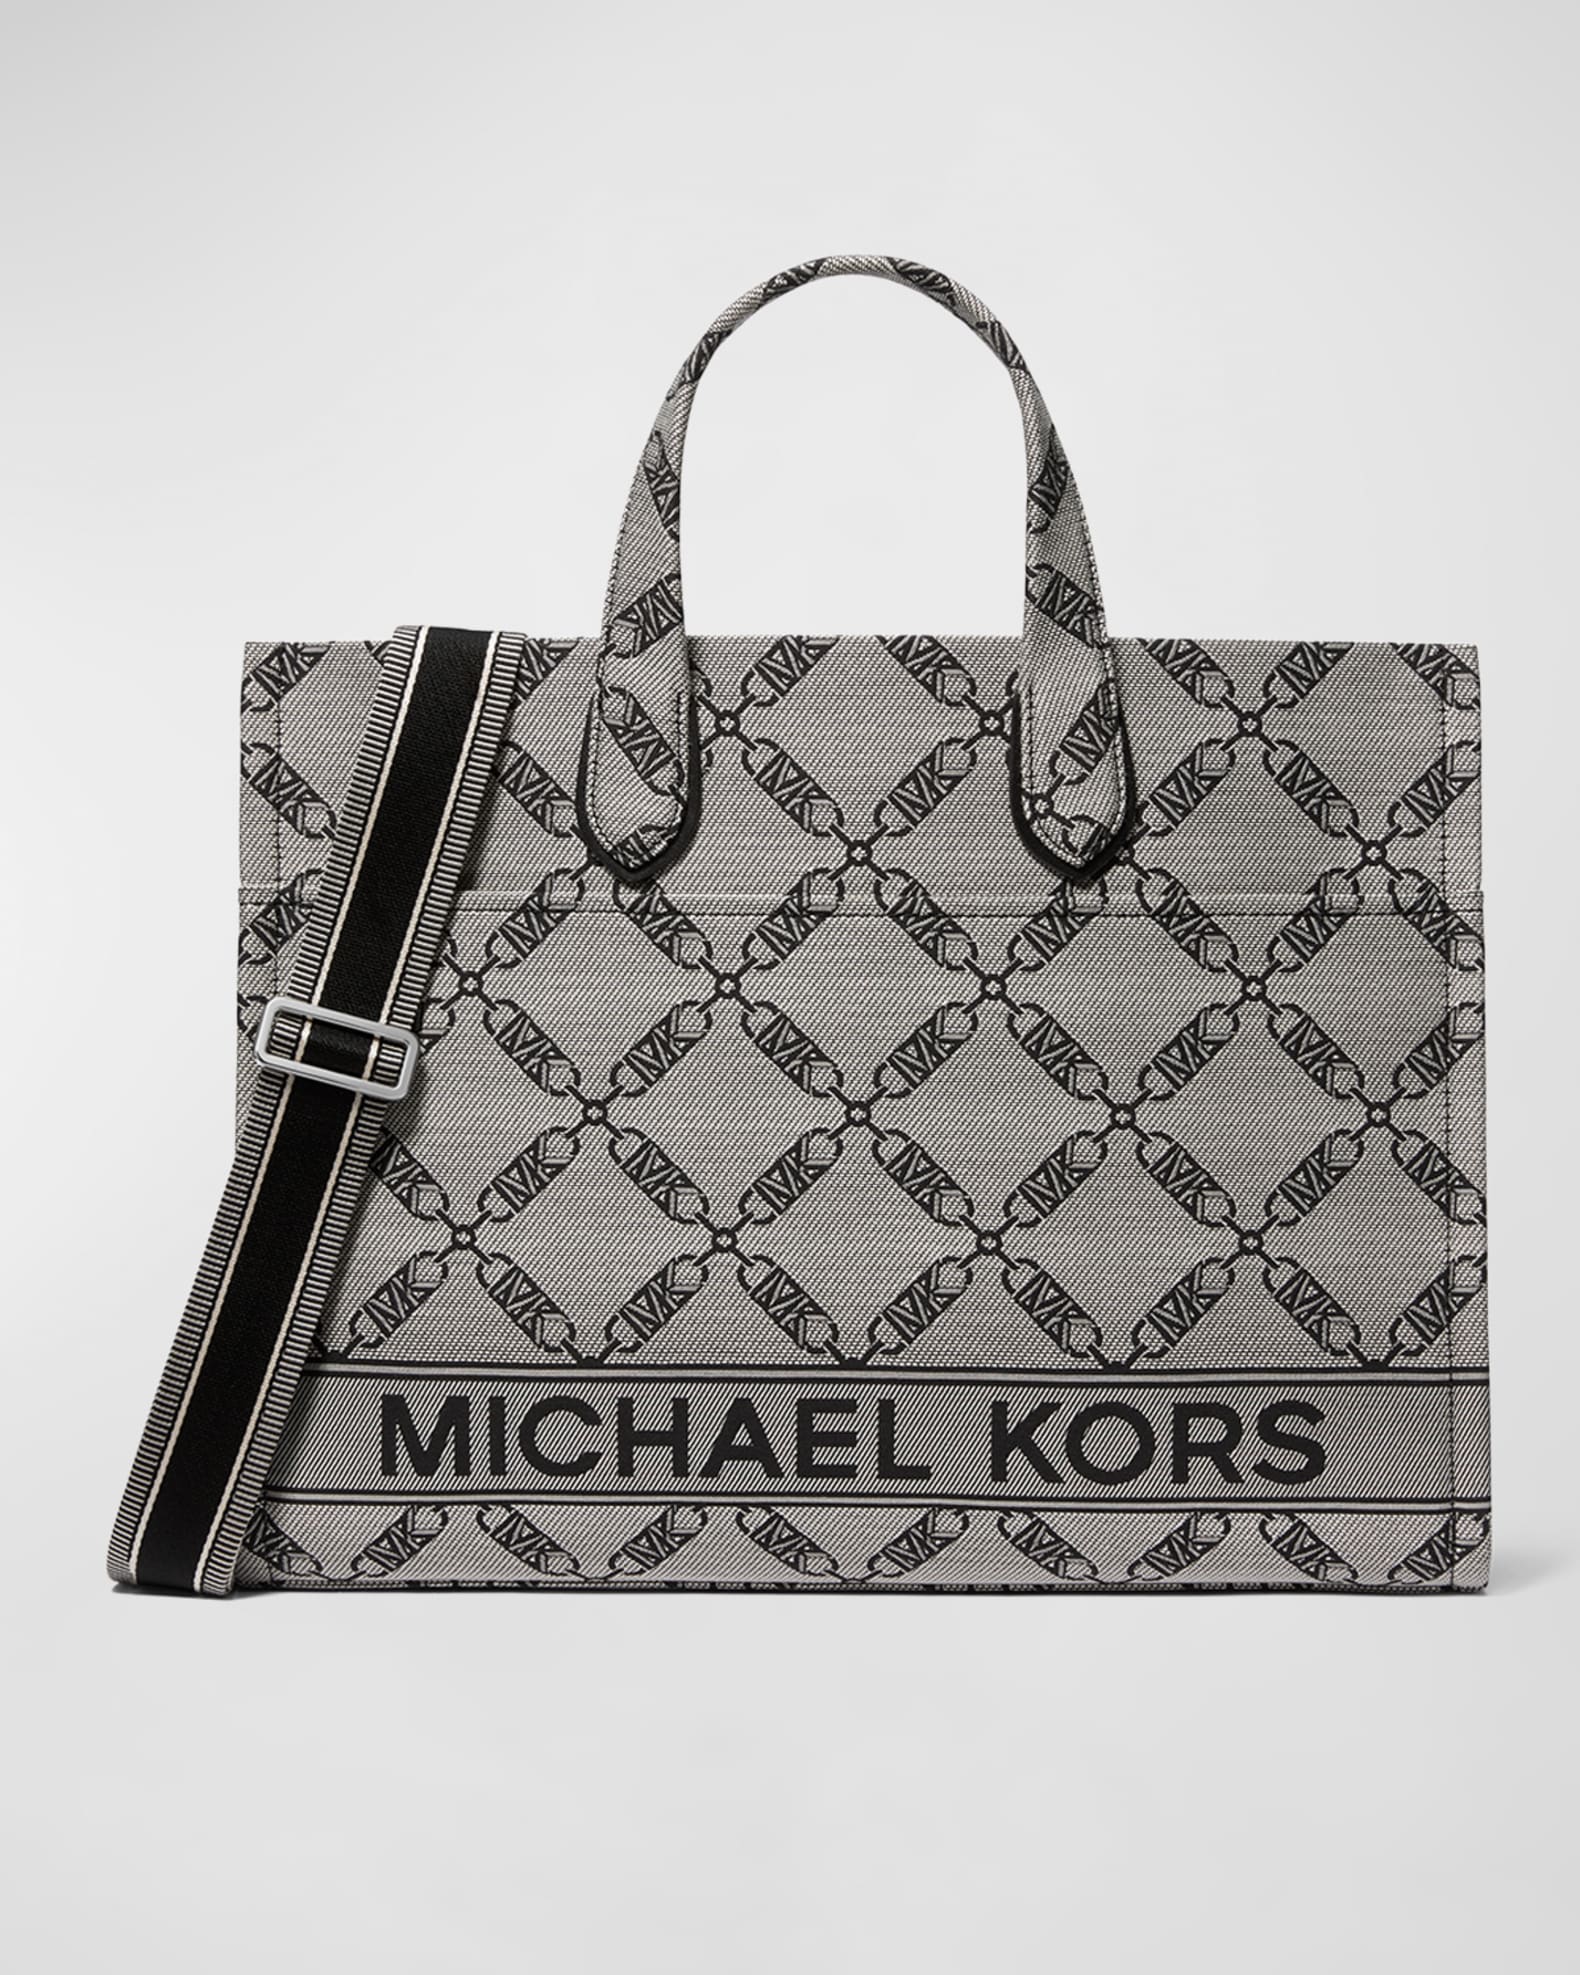 Michael Kors, Bags, Michael Kors Monogram Black Tote